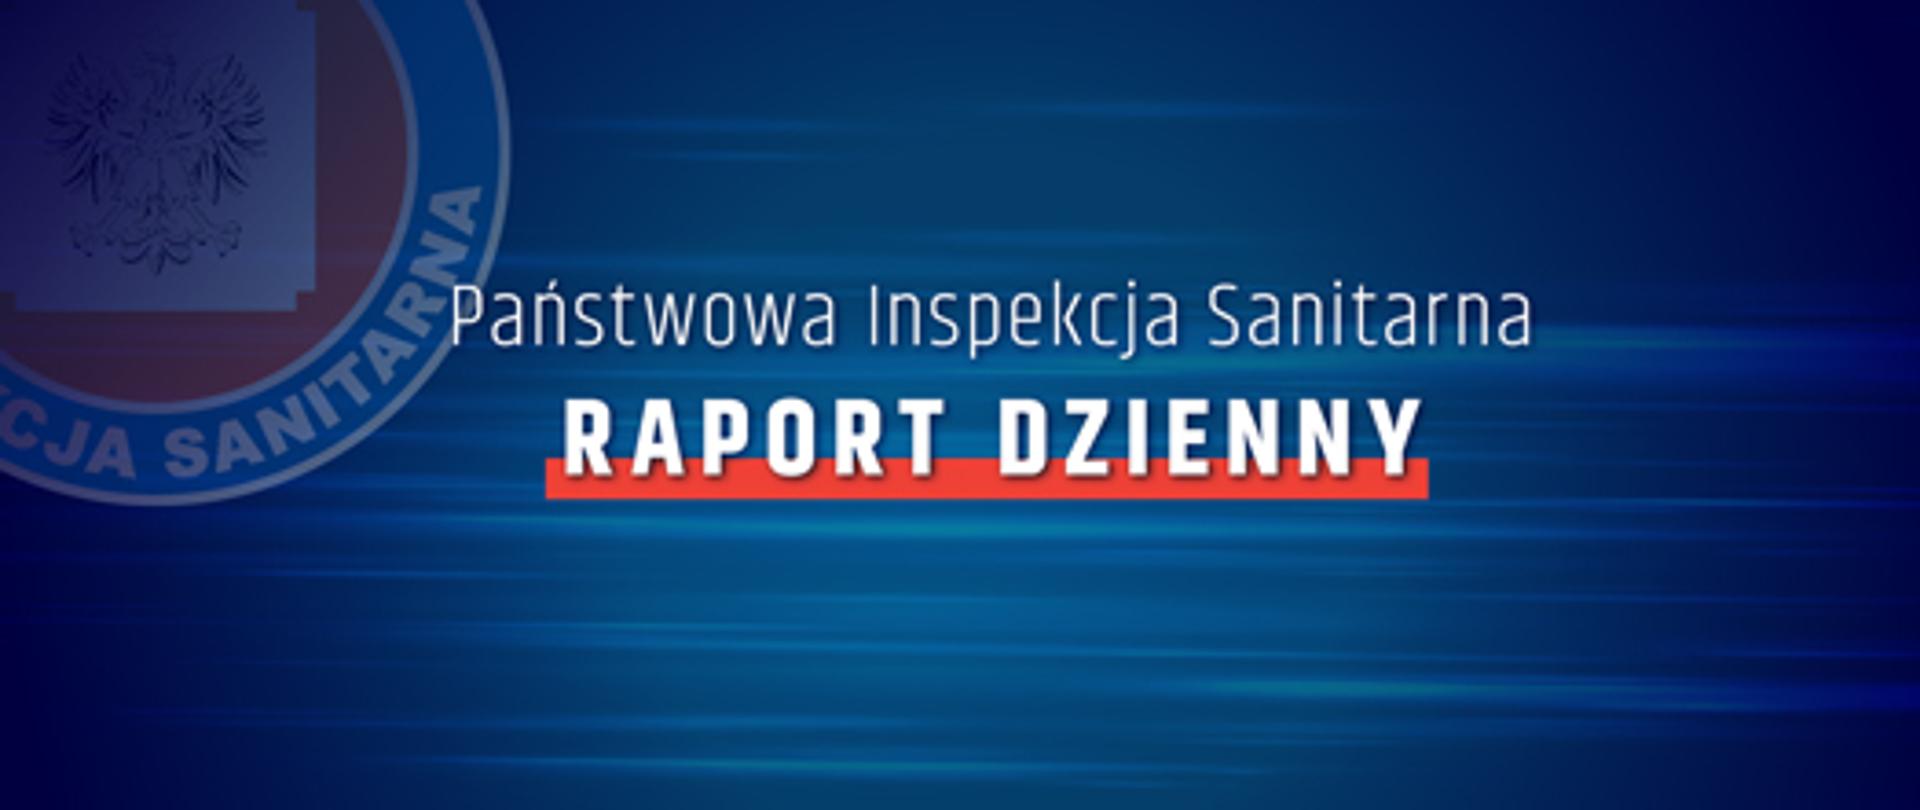 Państwowa Inspekcja Sanitarna - Raport Dzienny